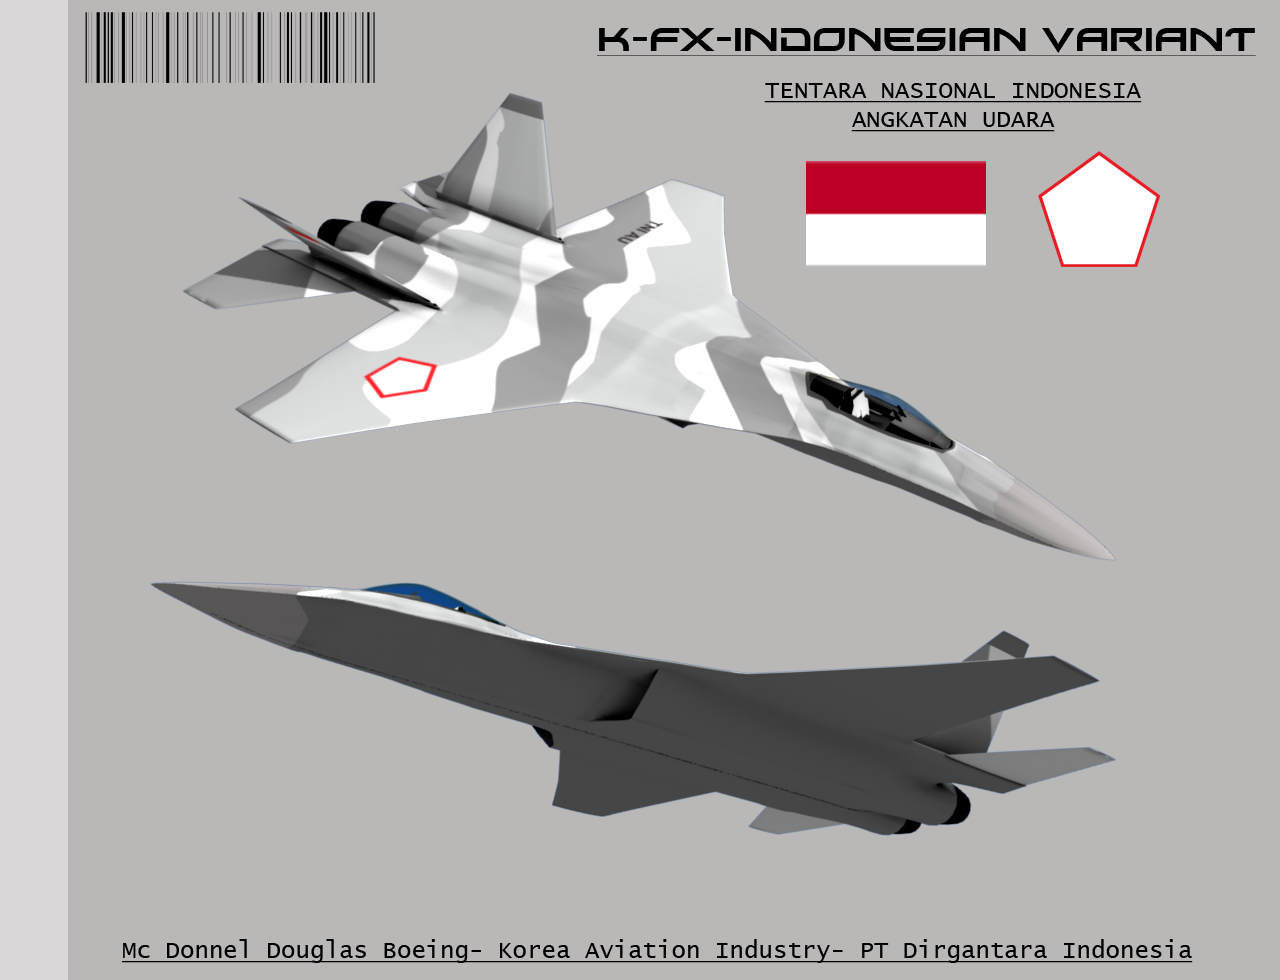 kfx_indonesian_variant_by_stealthflanker-d4ukybg.png